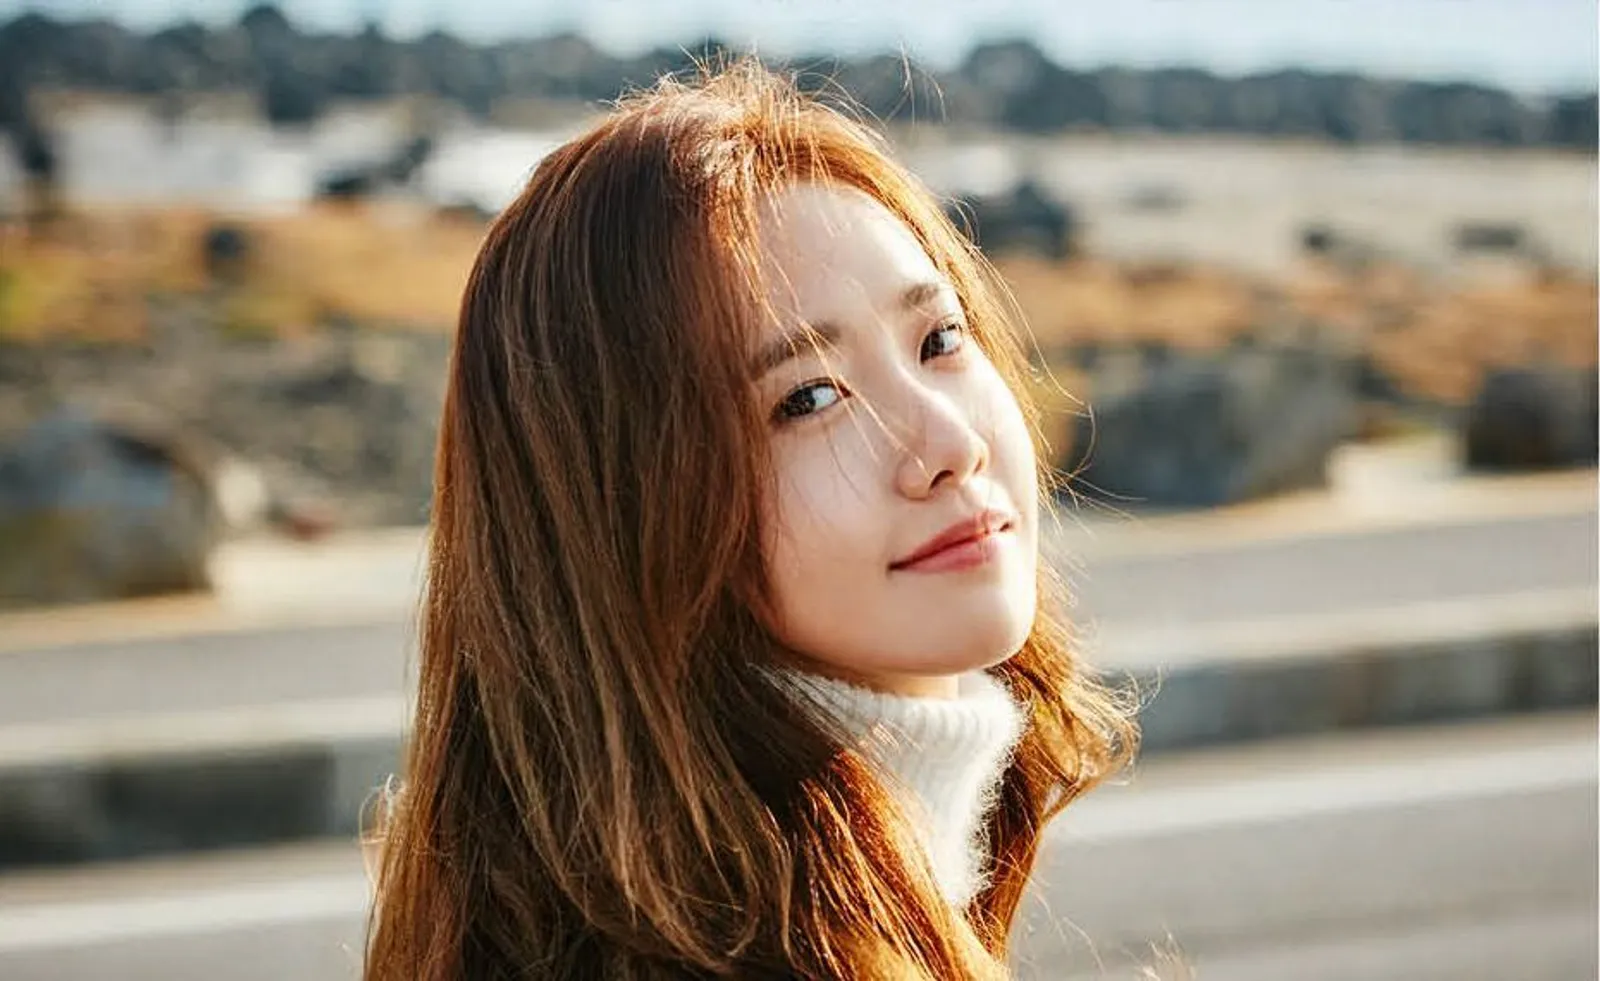 Berbakat Akting, 15 Idol KPop Ini Jadi Langganan Main di Drama Korea